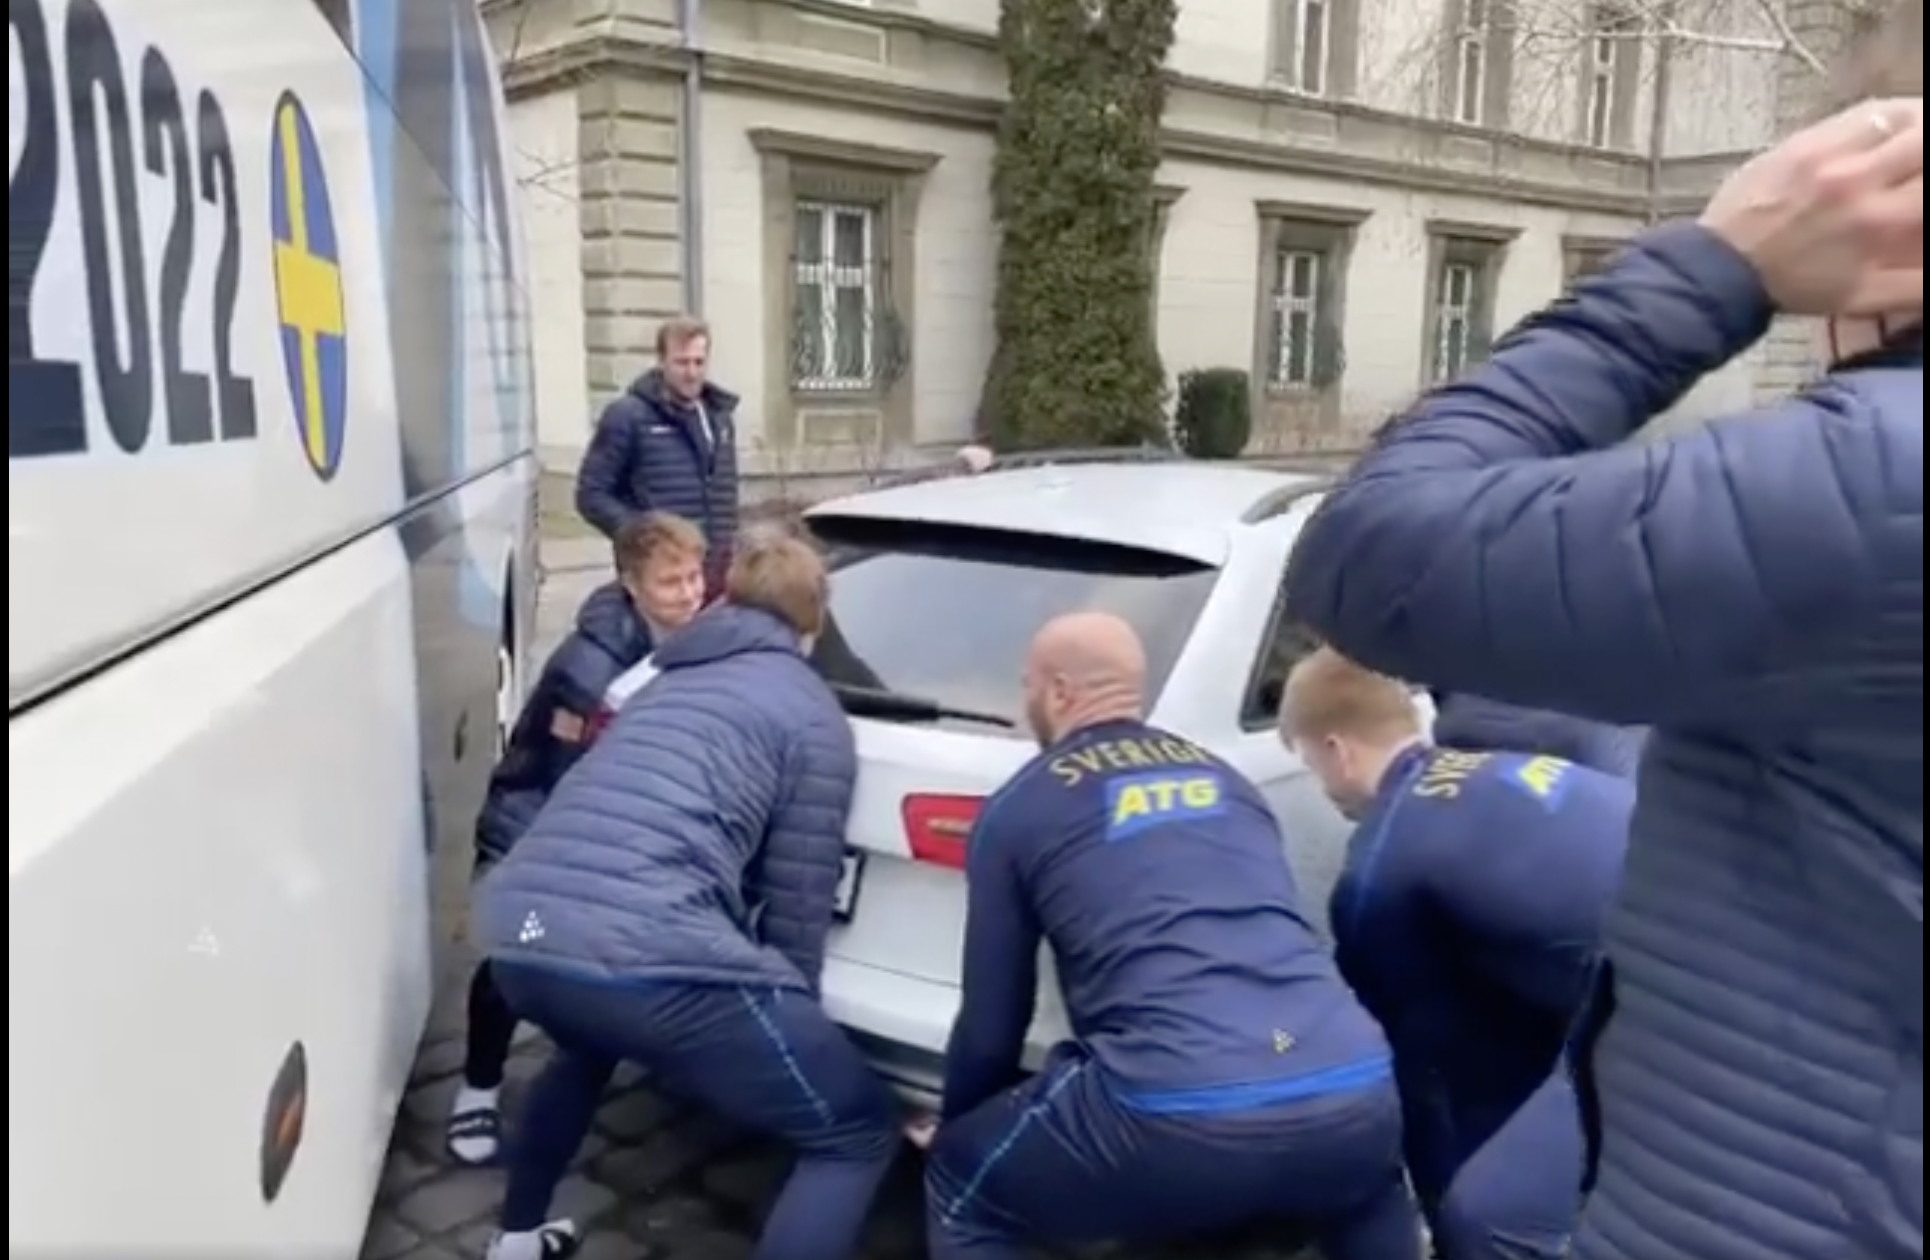 Hihetetlen videó, a svéd kézisek odébb tettek egy autót Budapesten